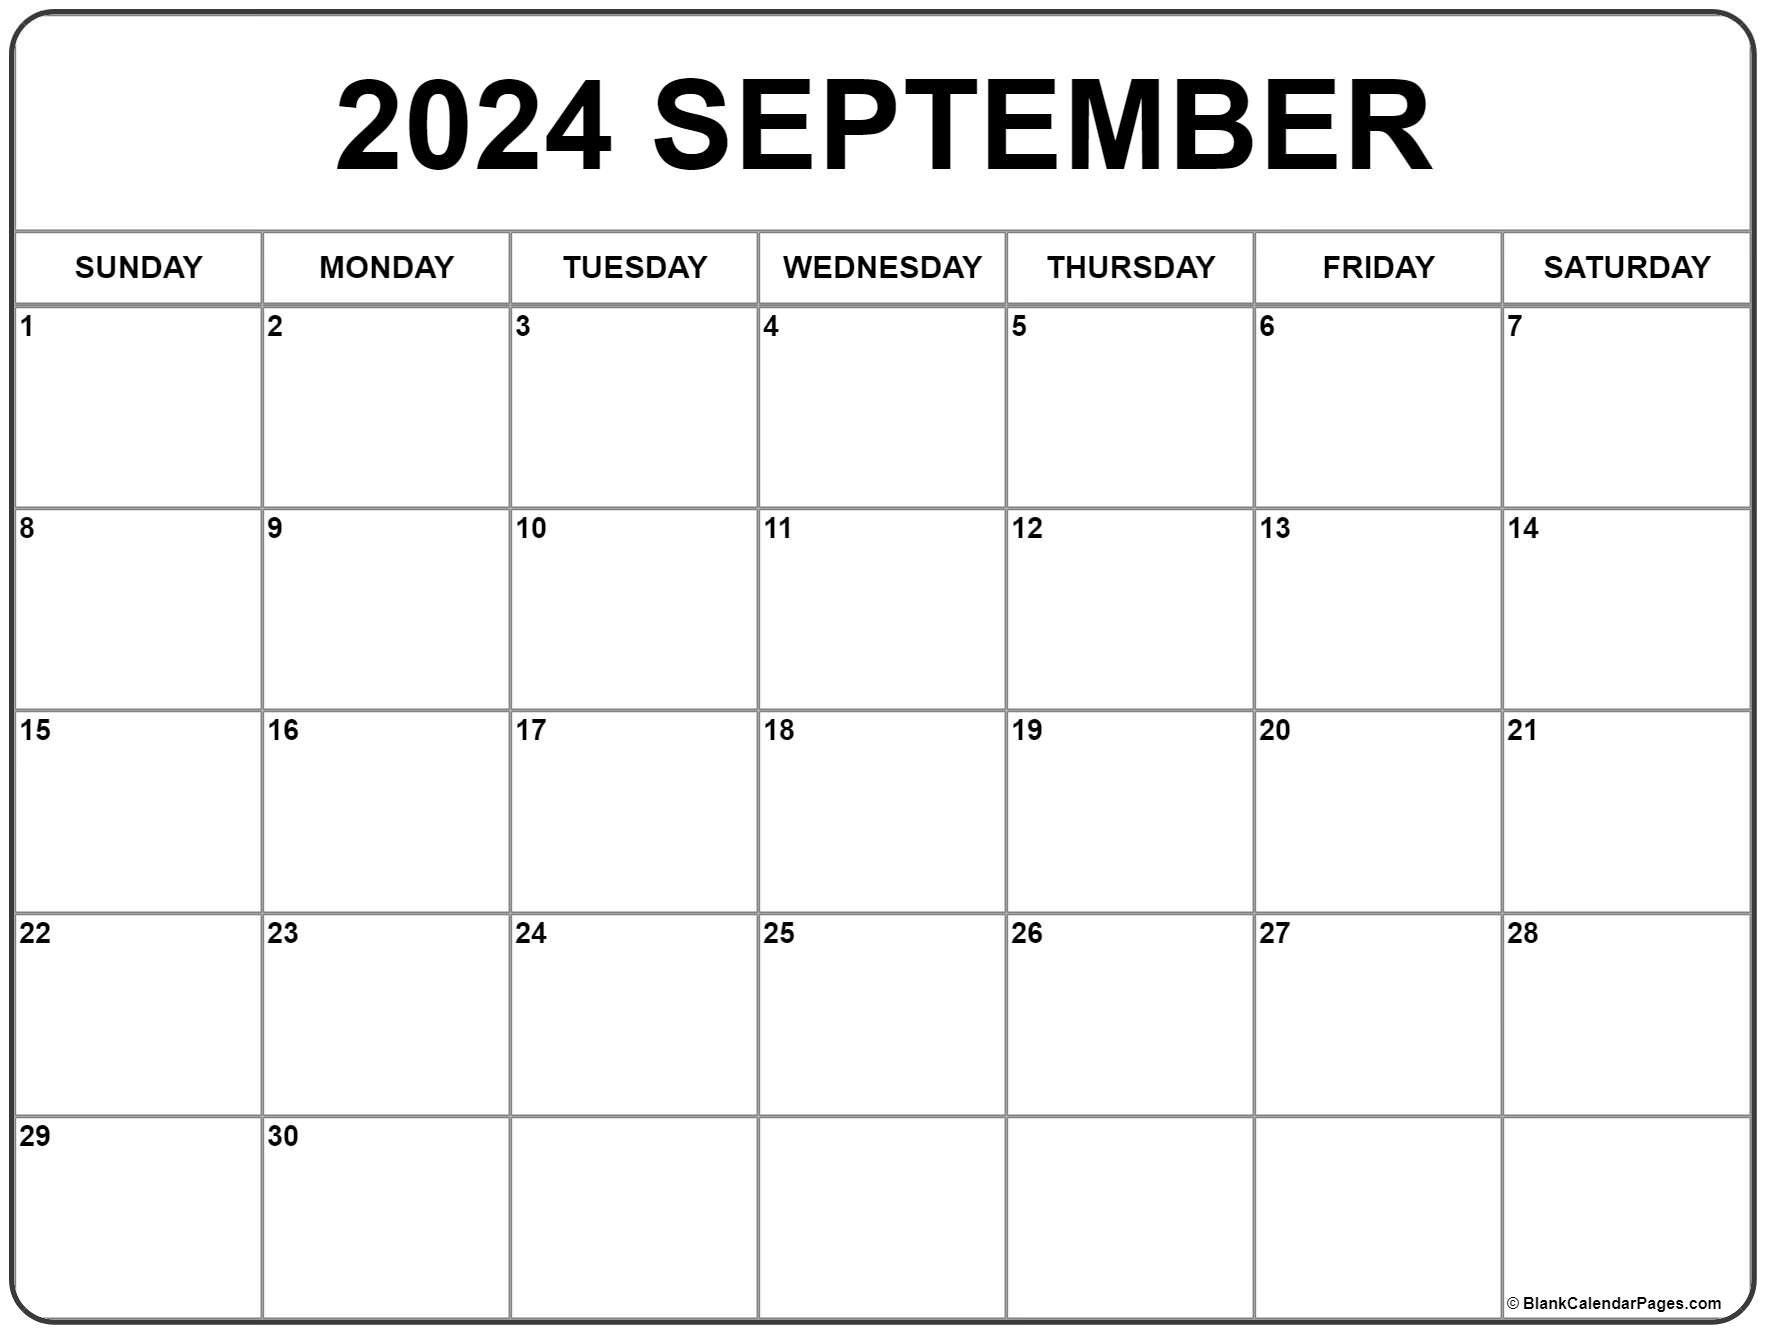 Blank September 2021 Calendar September 2021 calendar | free printable monthly calendars